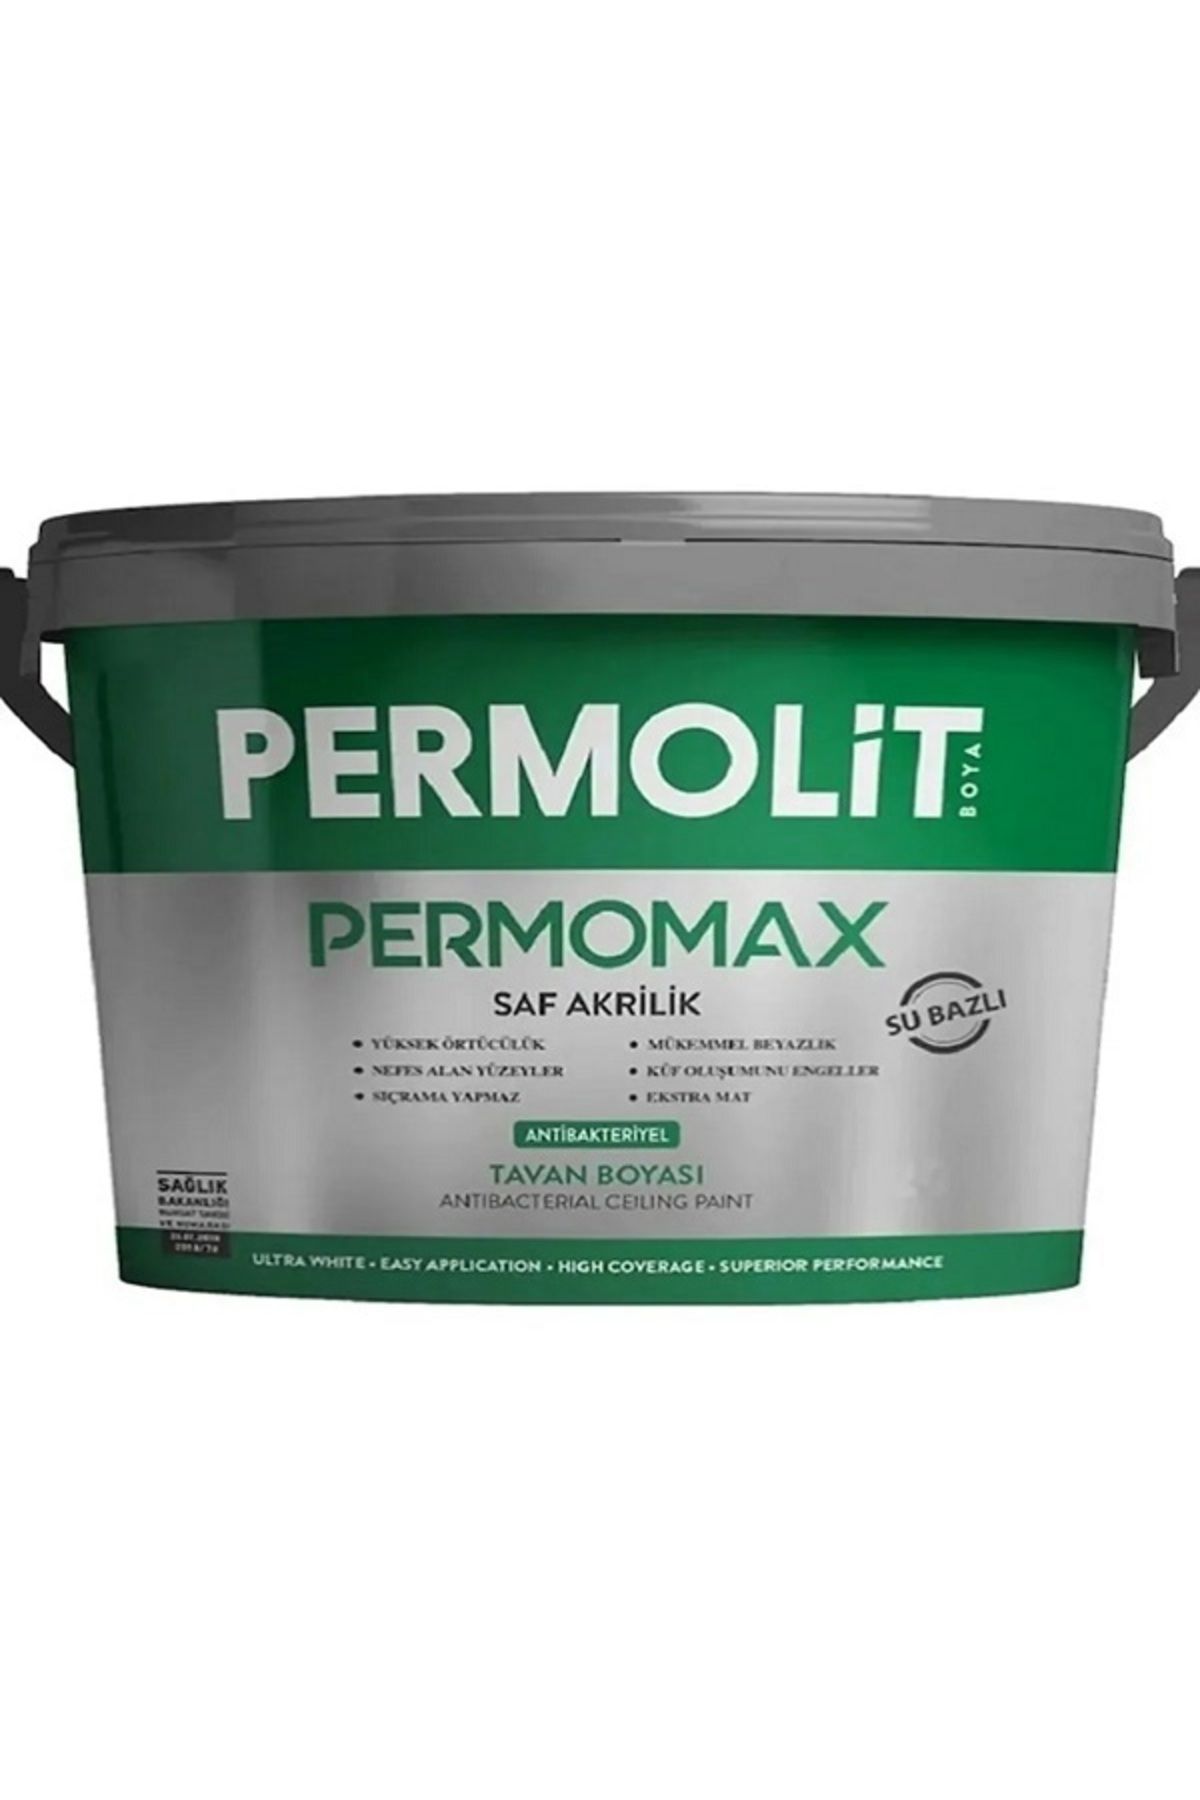 Permolit Permomax Antibakteriyel Antiküf Tavan Boyası 20 Kg